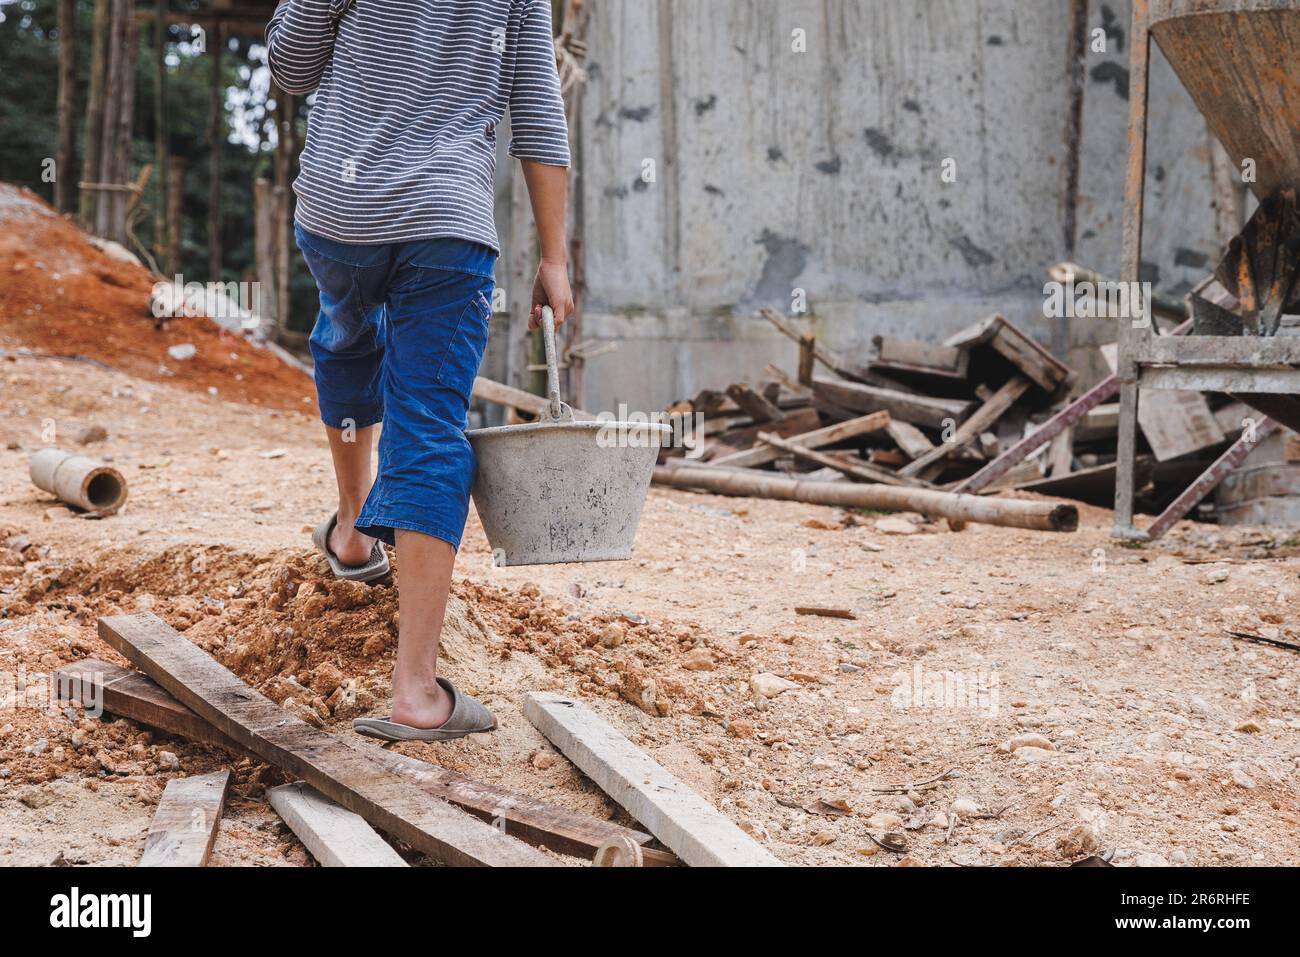 Kinder, die hart auf der Baustelle arbeiten, Kinderarbeit, Welttag gegen Kinderarbeit Konzept. Stockfoto